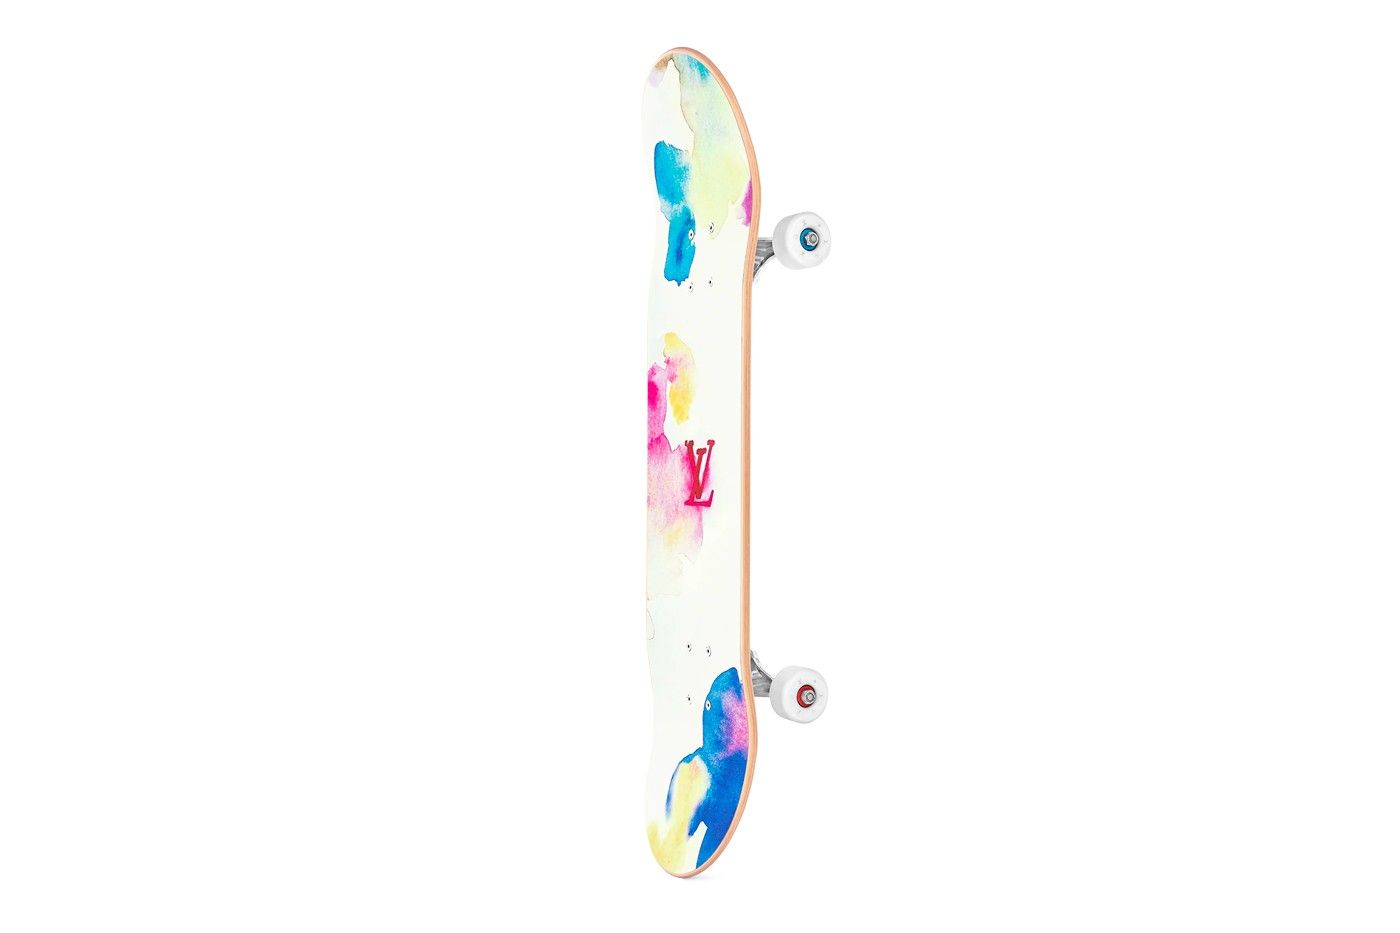 Louis Vuitton x Virgil Abloh Watercolor Skateboard